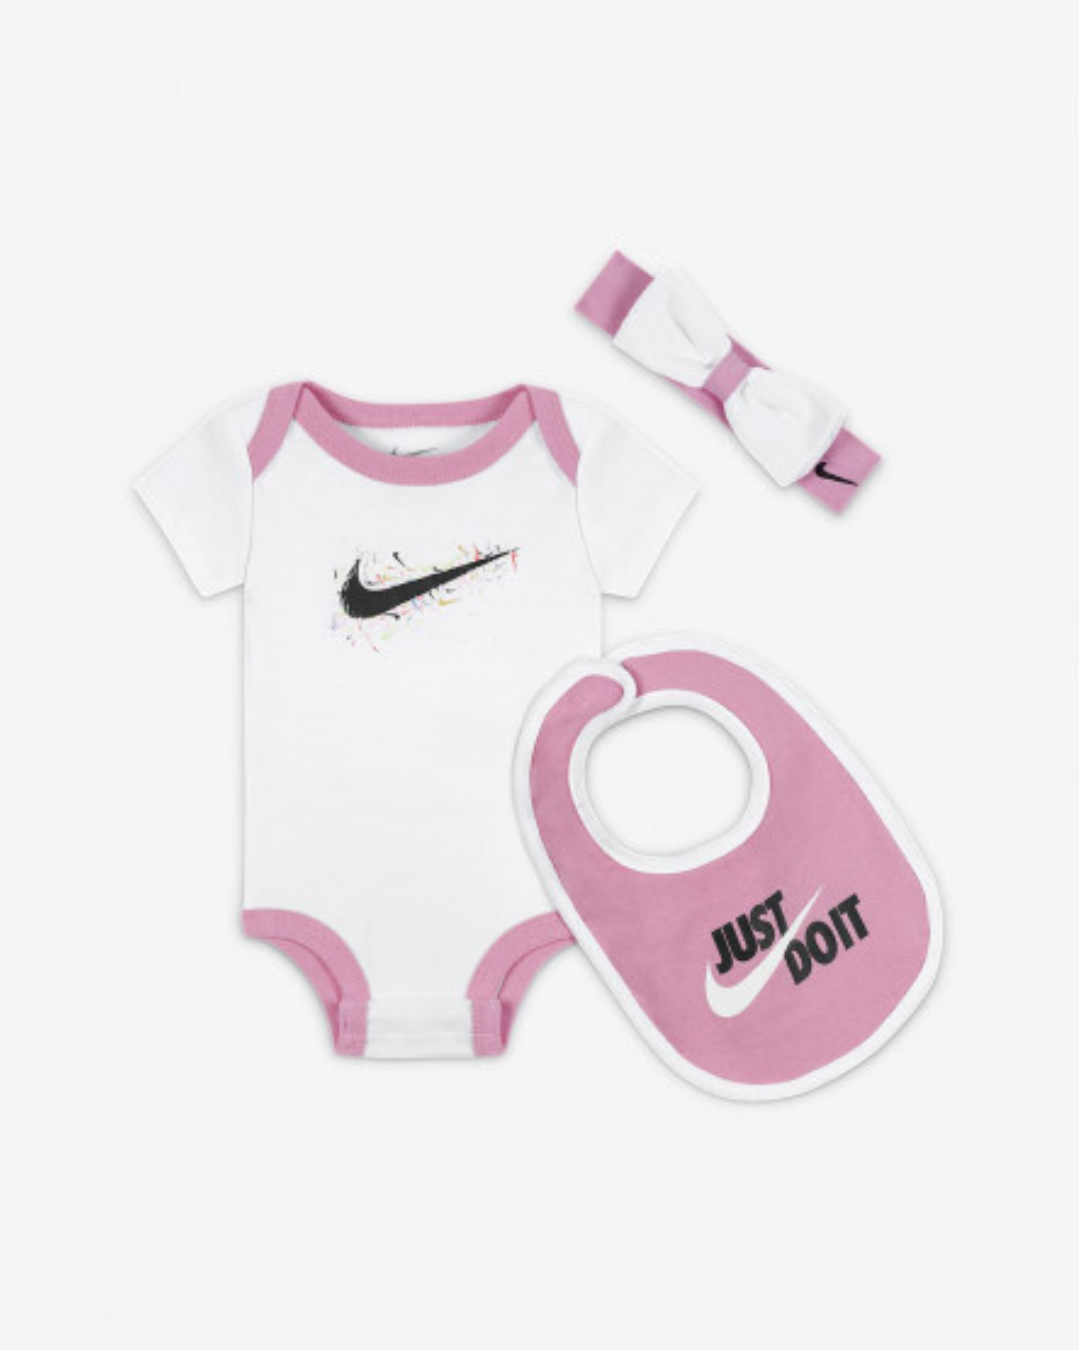 Nike Baby Set - White/Pink/Black